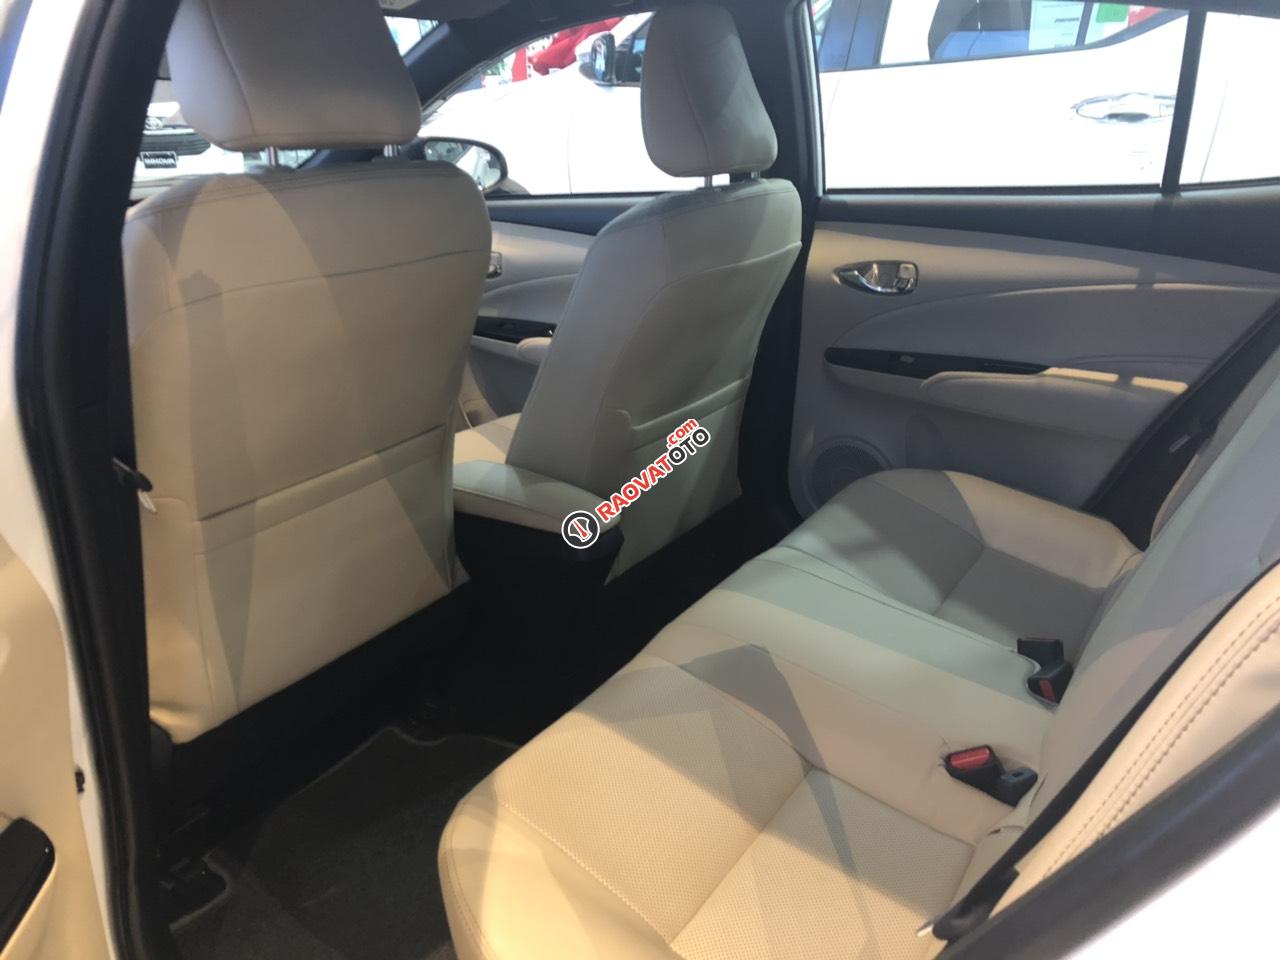 Bán Toyota Yaris 2019 giá tốt - khuyến mãi hấp dẫn - giao xe ngay - 0909 399 882-4